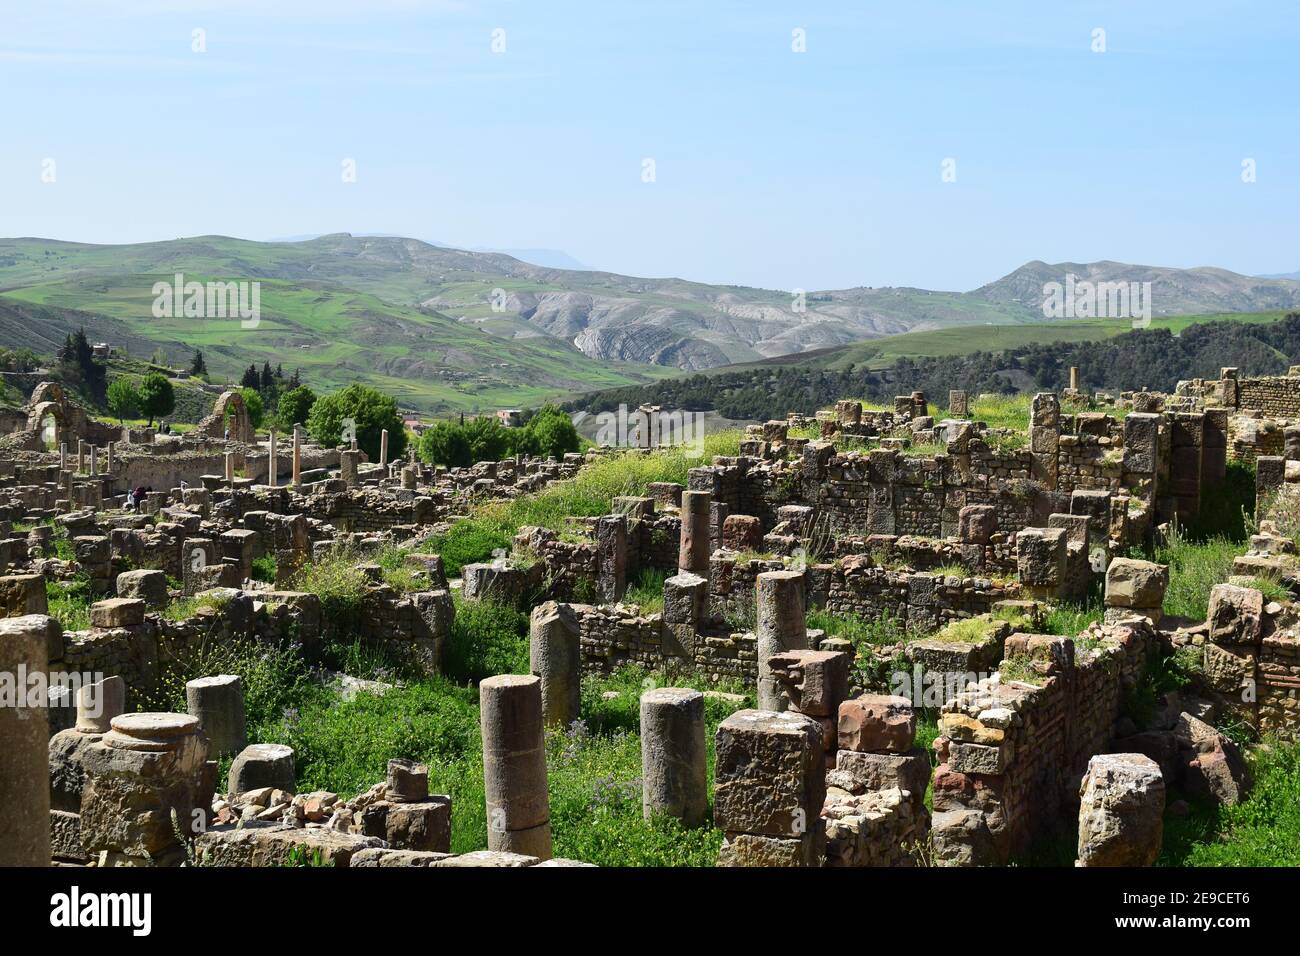 Ruines romaines de la ville de Djemila, Setif, Algérie Banque D'Images